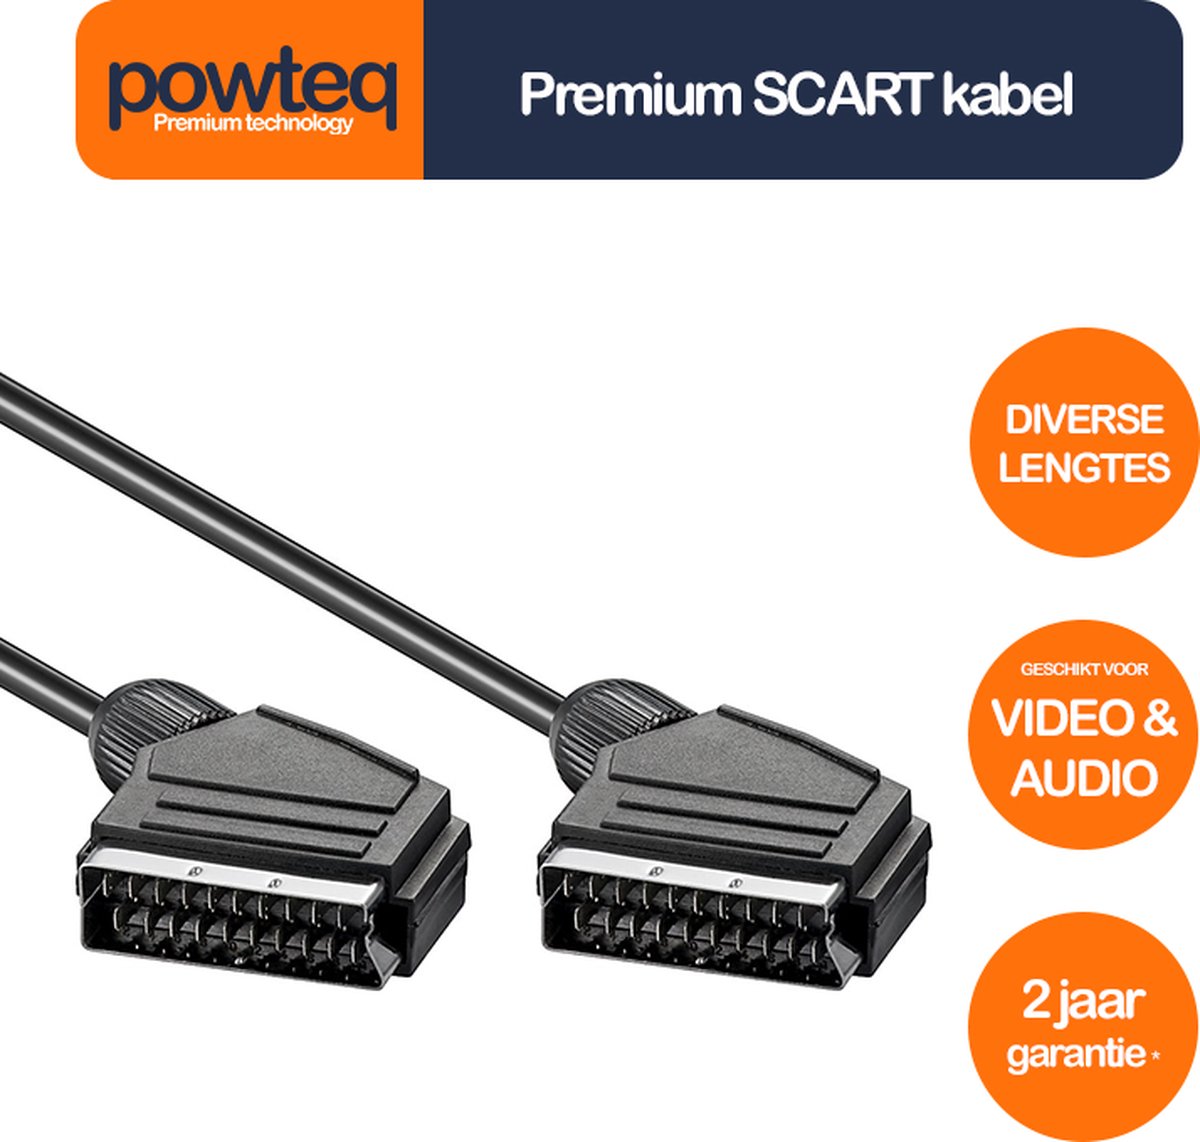 Powteq 60 cm premium SCART kabel - Audio & Video - Standaard SCART aansluiting - Powteq